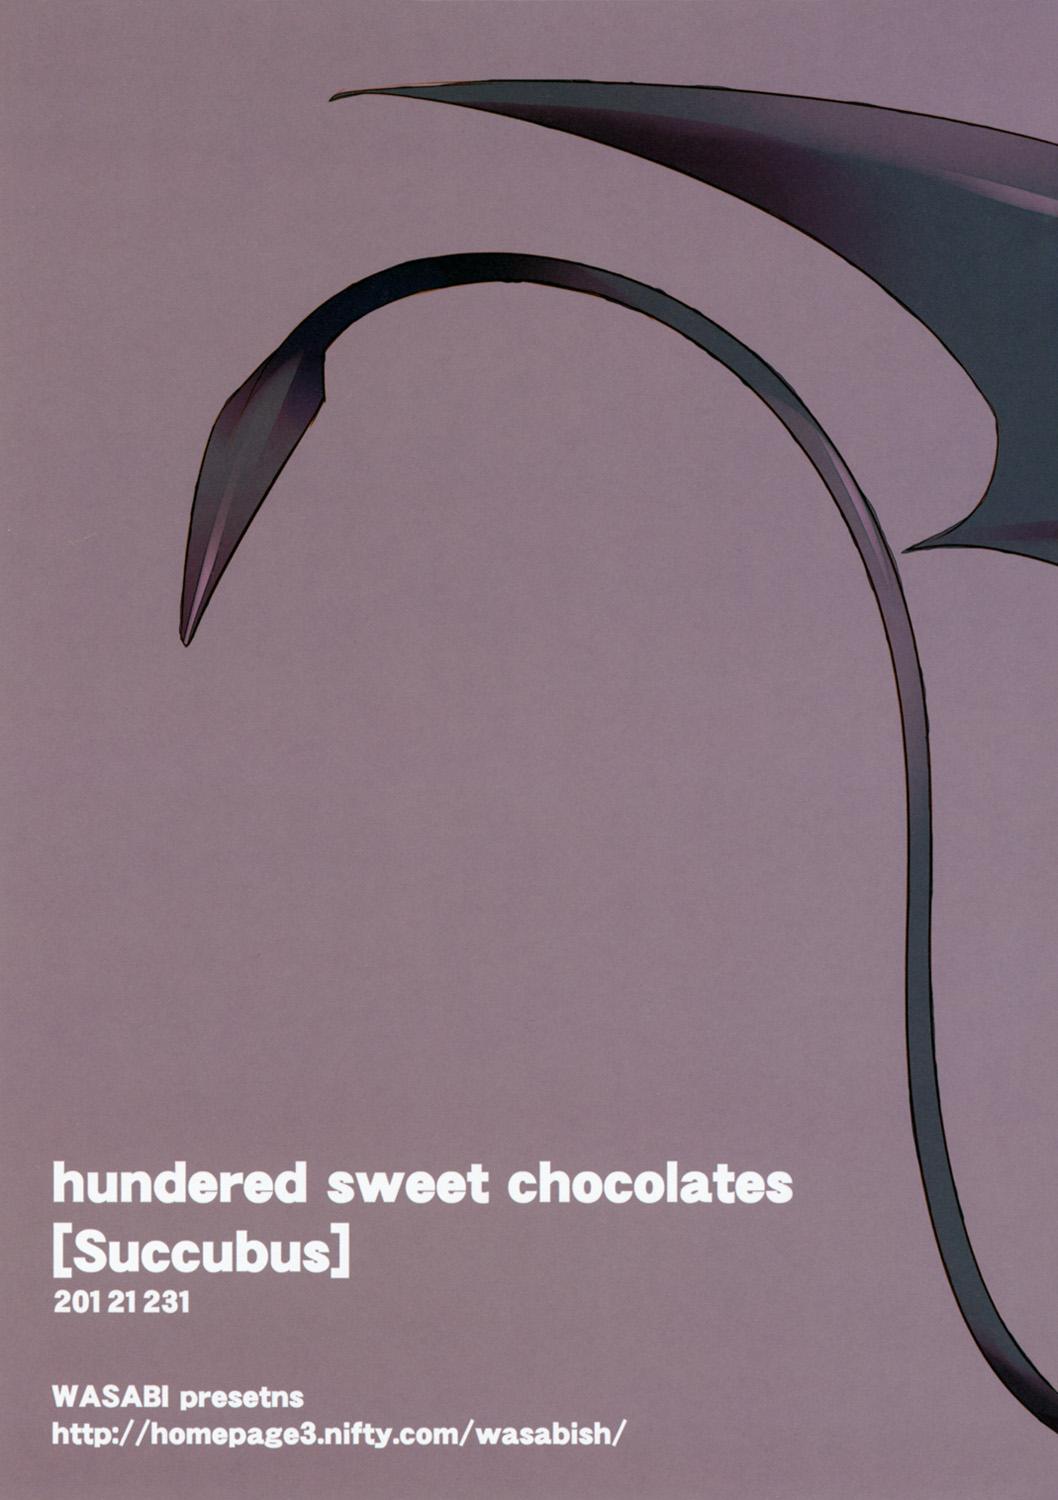 hundred sweet chocolates 10